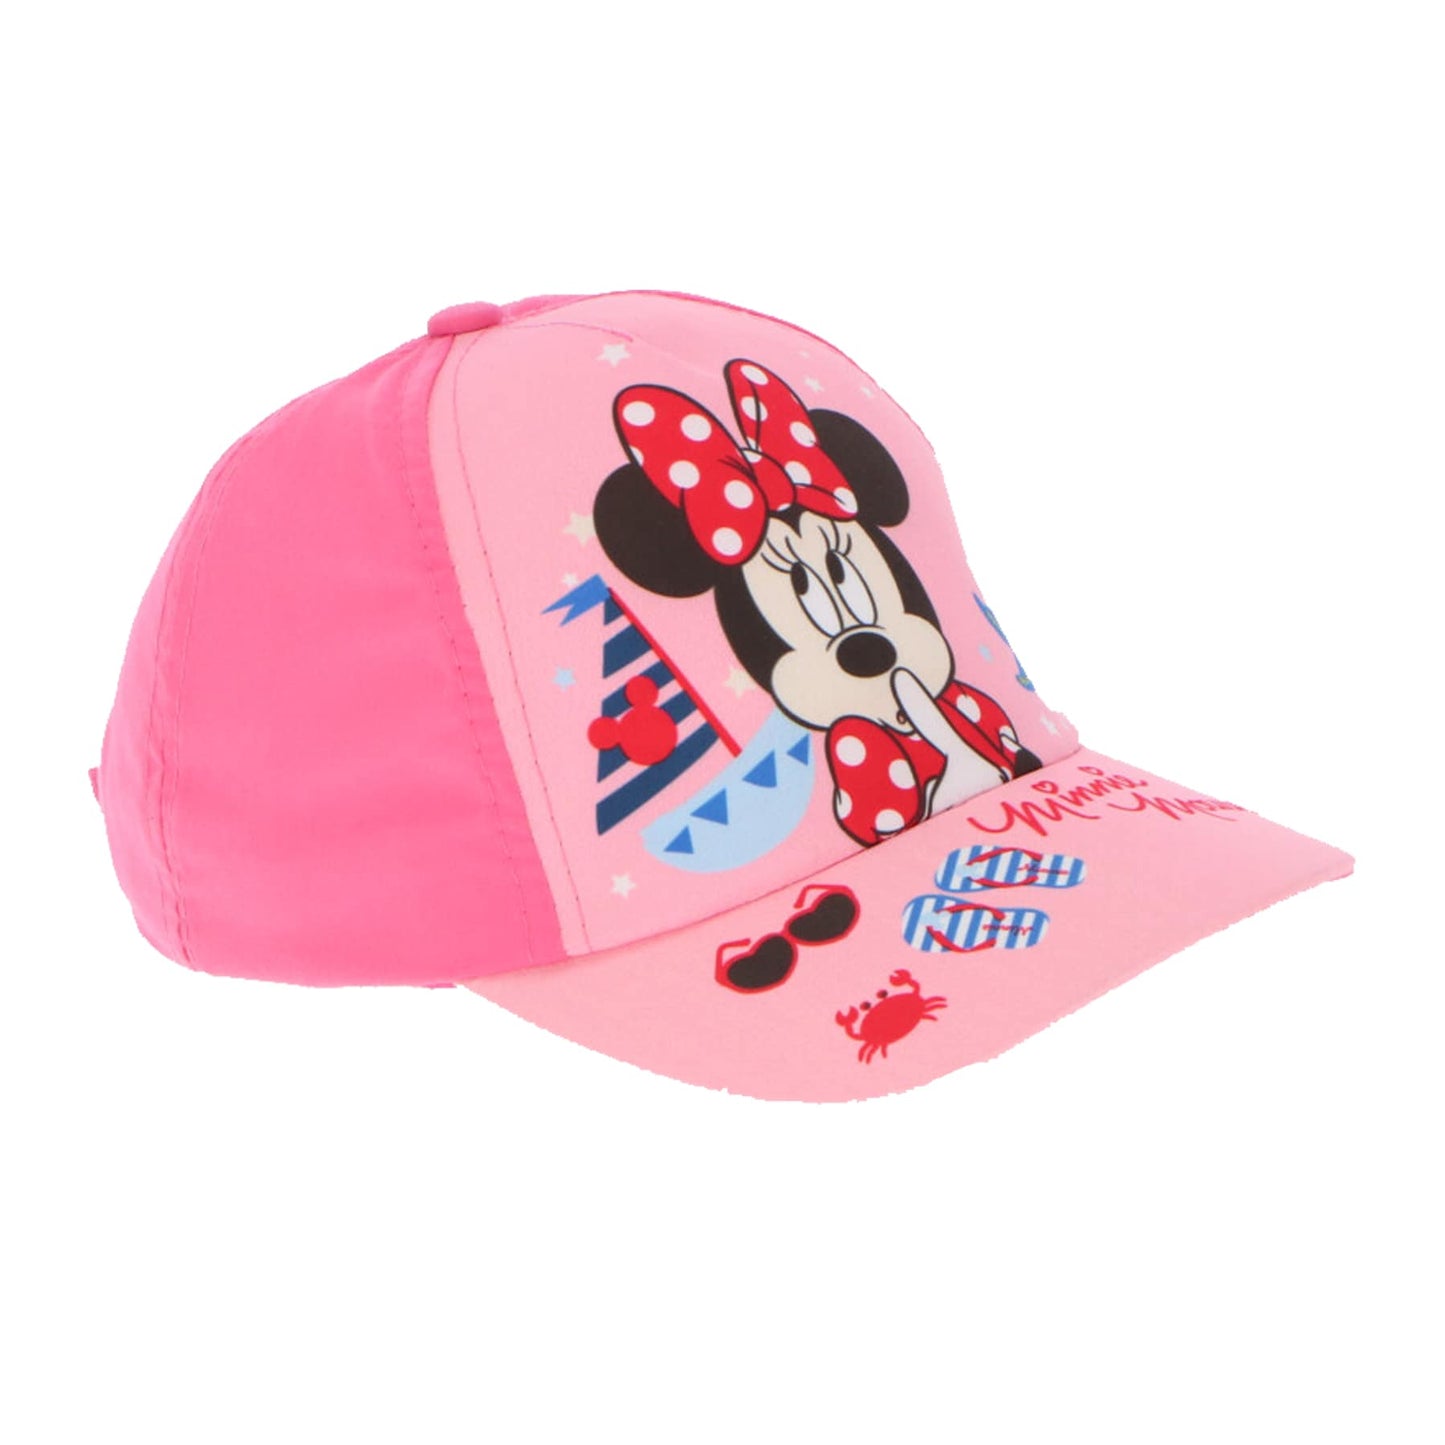 Minnie Mouse Beach Caps